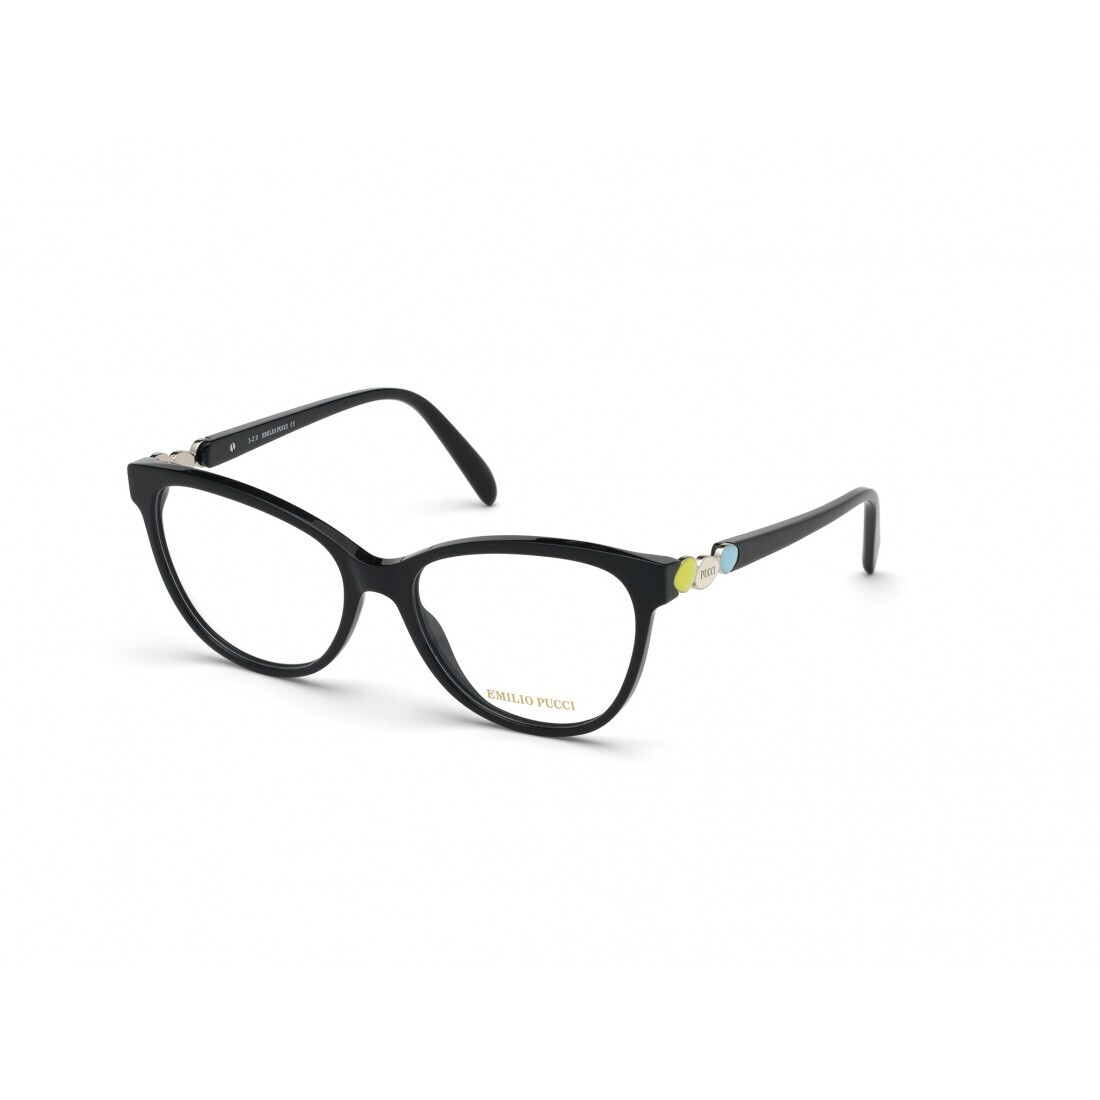 EMILIO PUCCI 5151/V 001 black occhiali